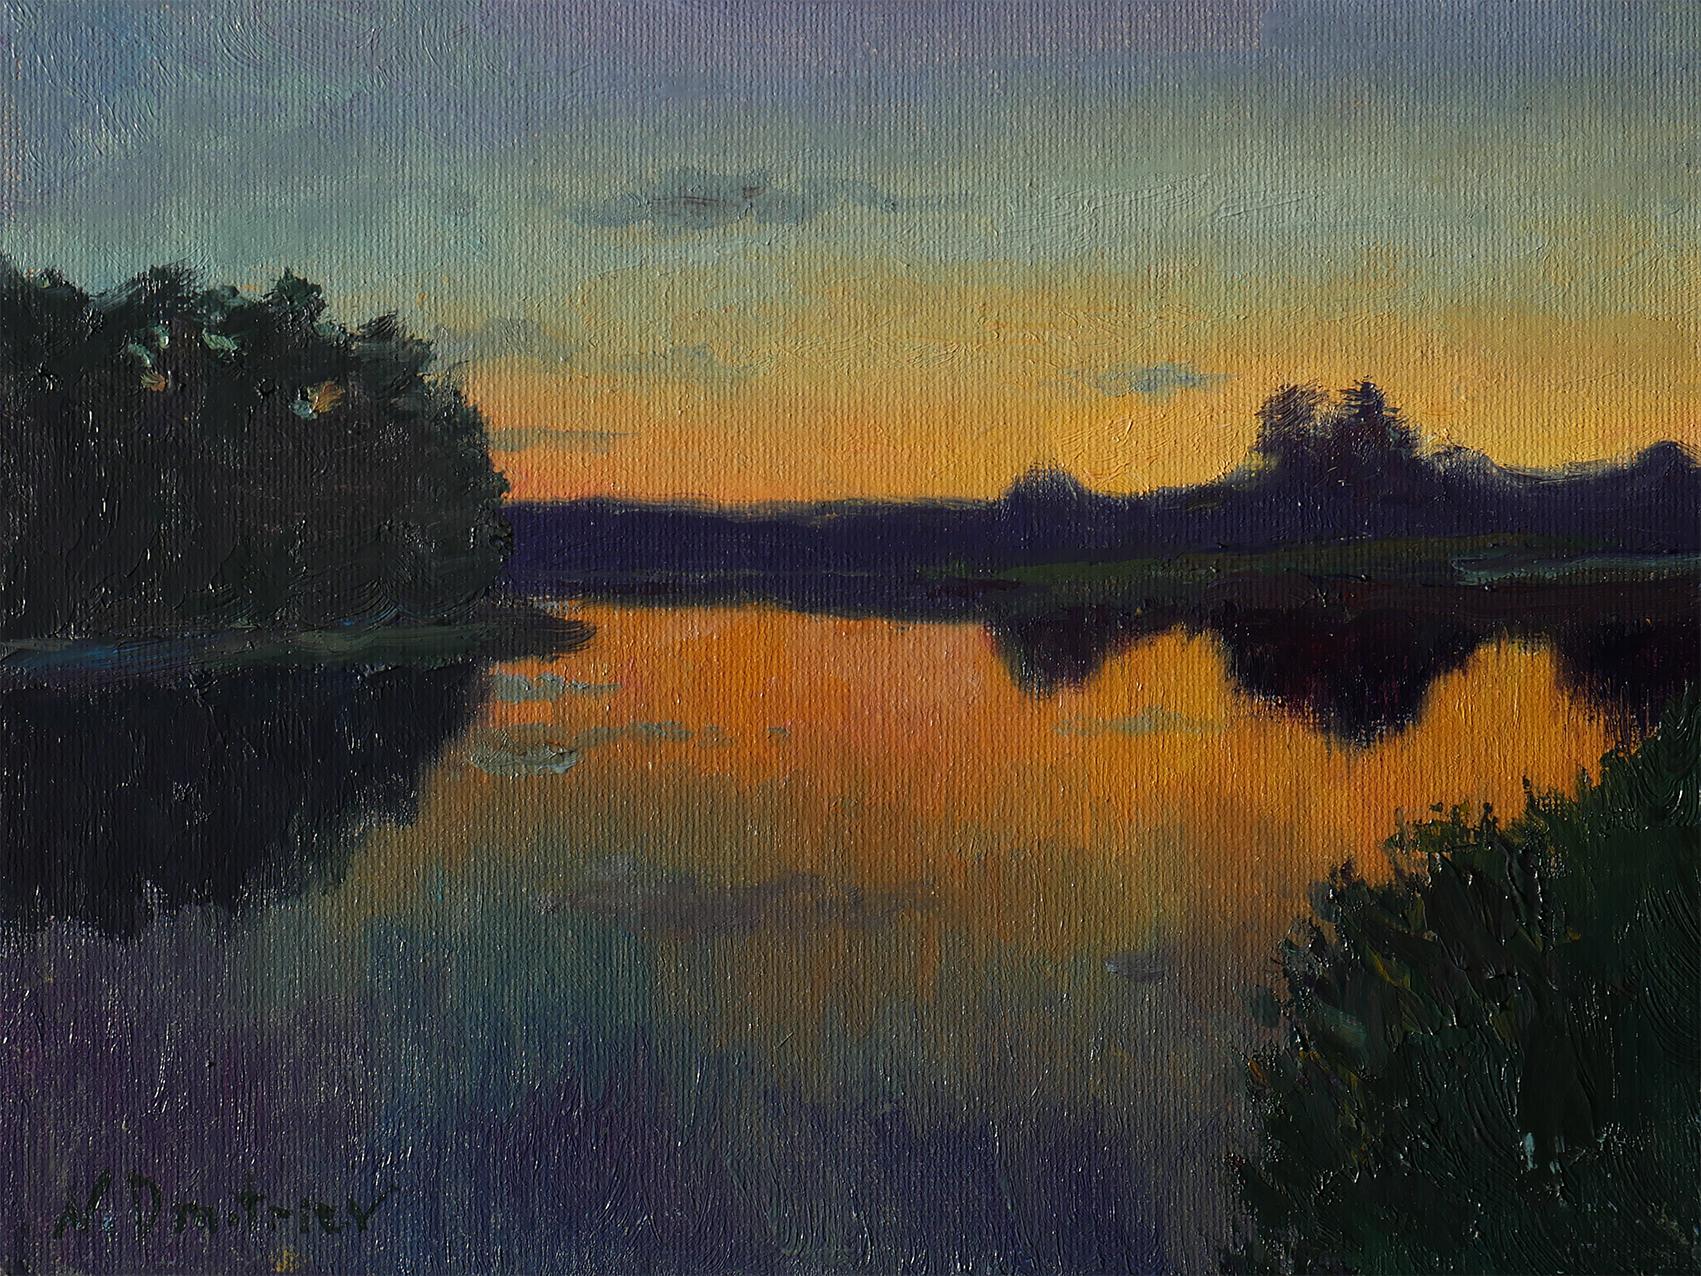 Coucher de soleil sur l'étang - paysage ensoleillé original, peinture